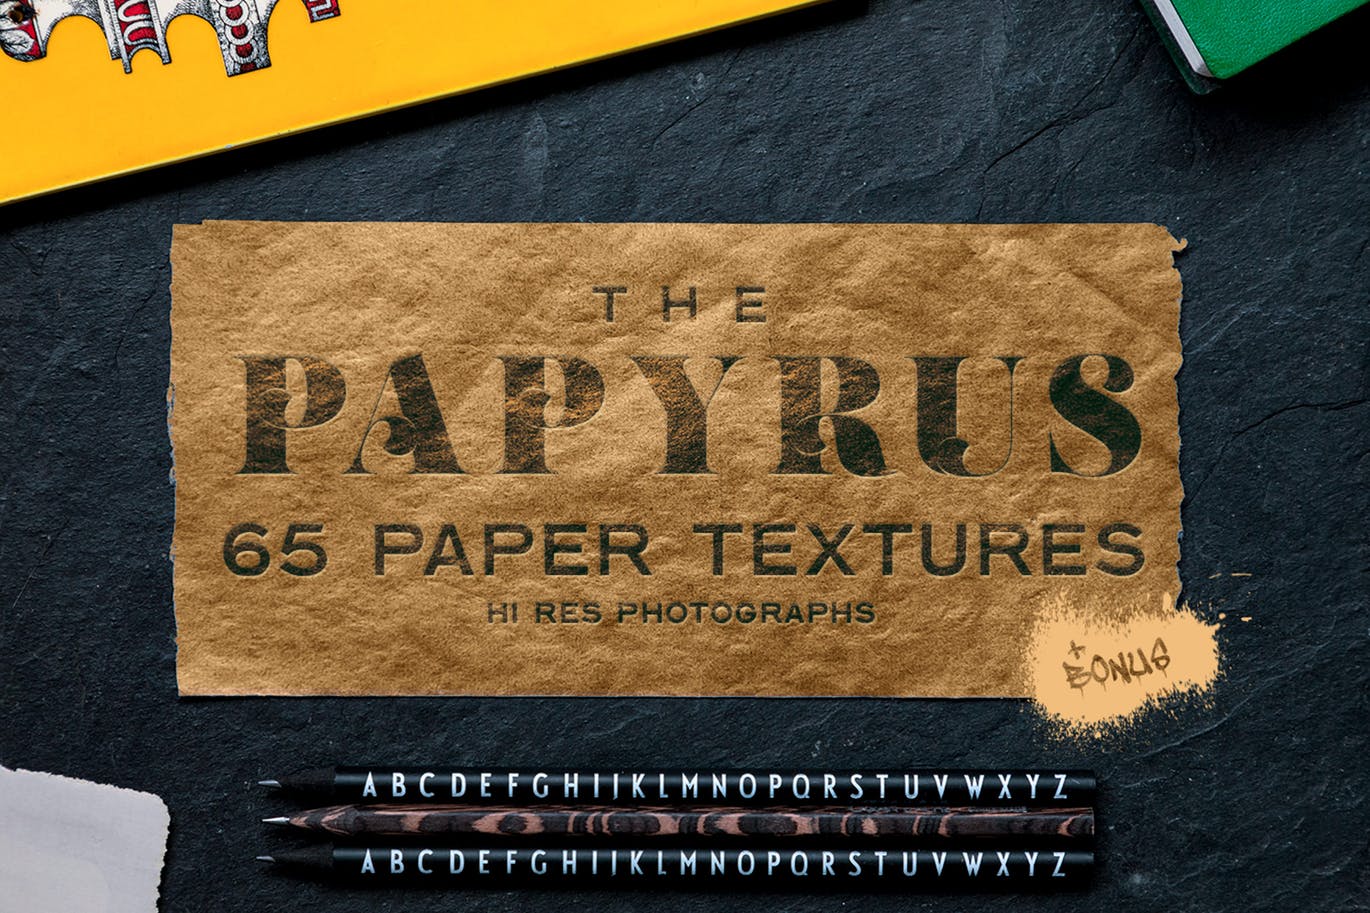 65个莎草纸纸张纹理合集 The Papyrus – 65 Paper Textures 图片素材 第1张